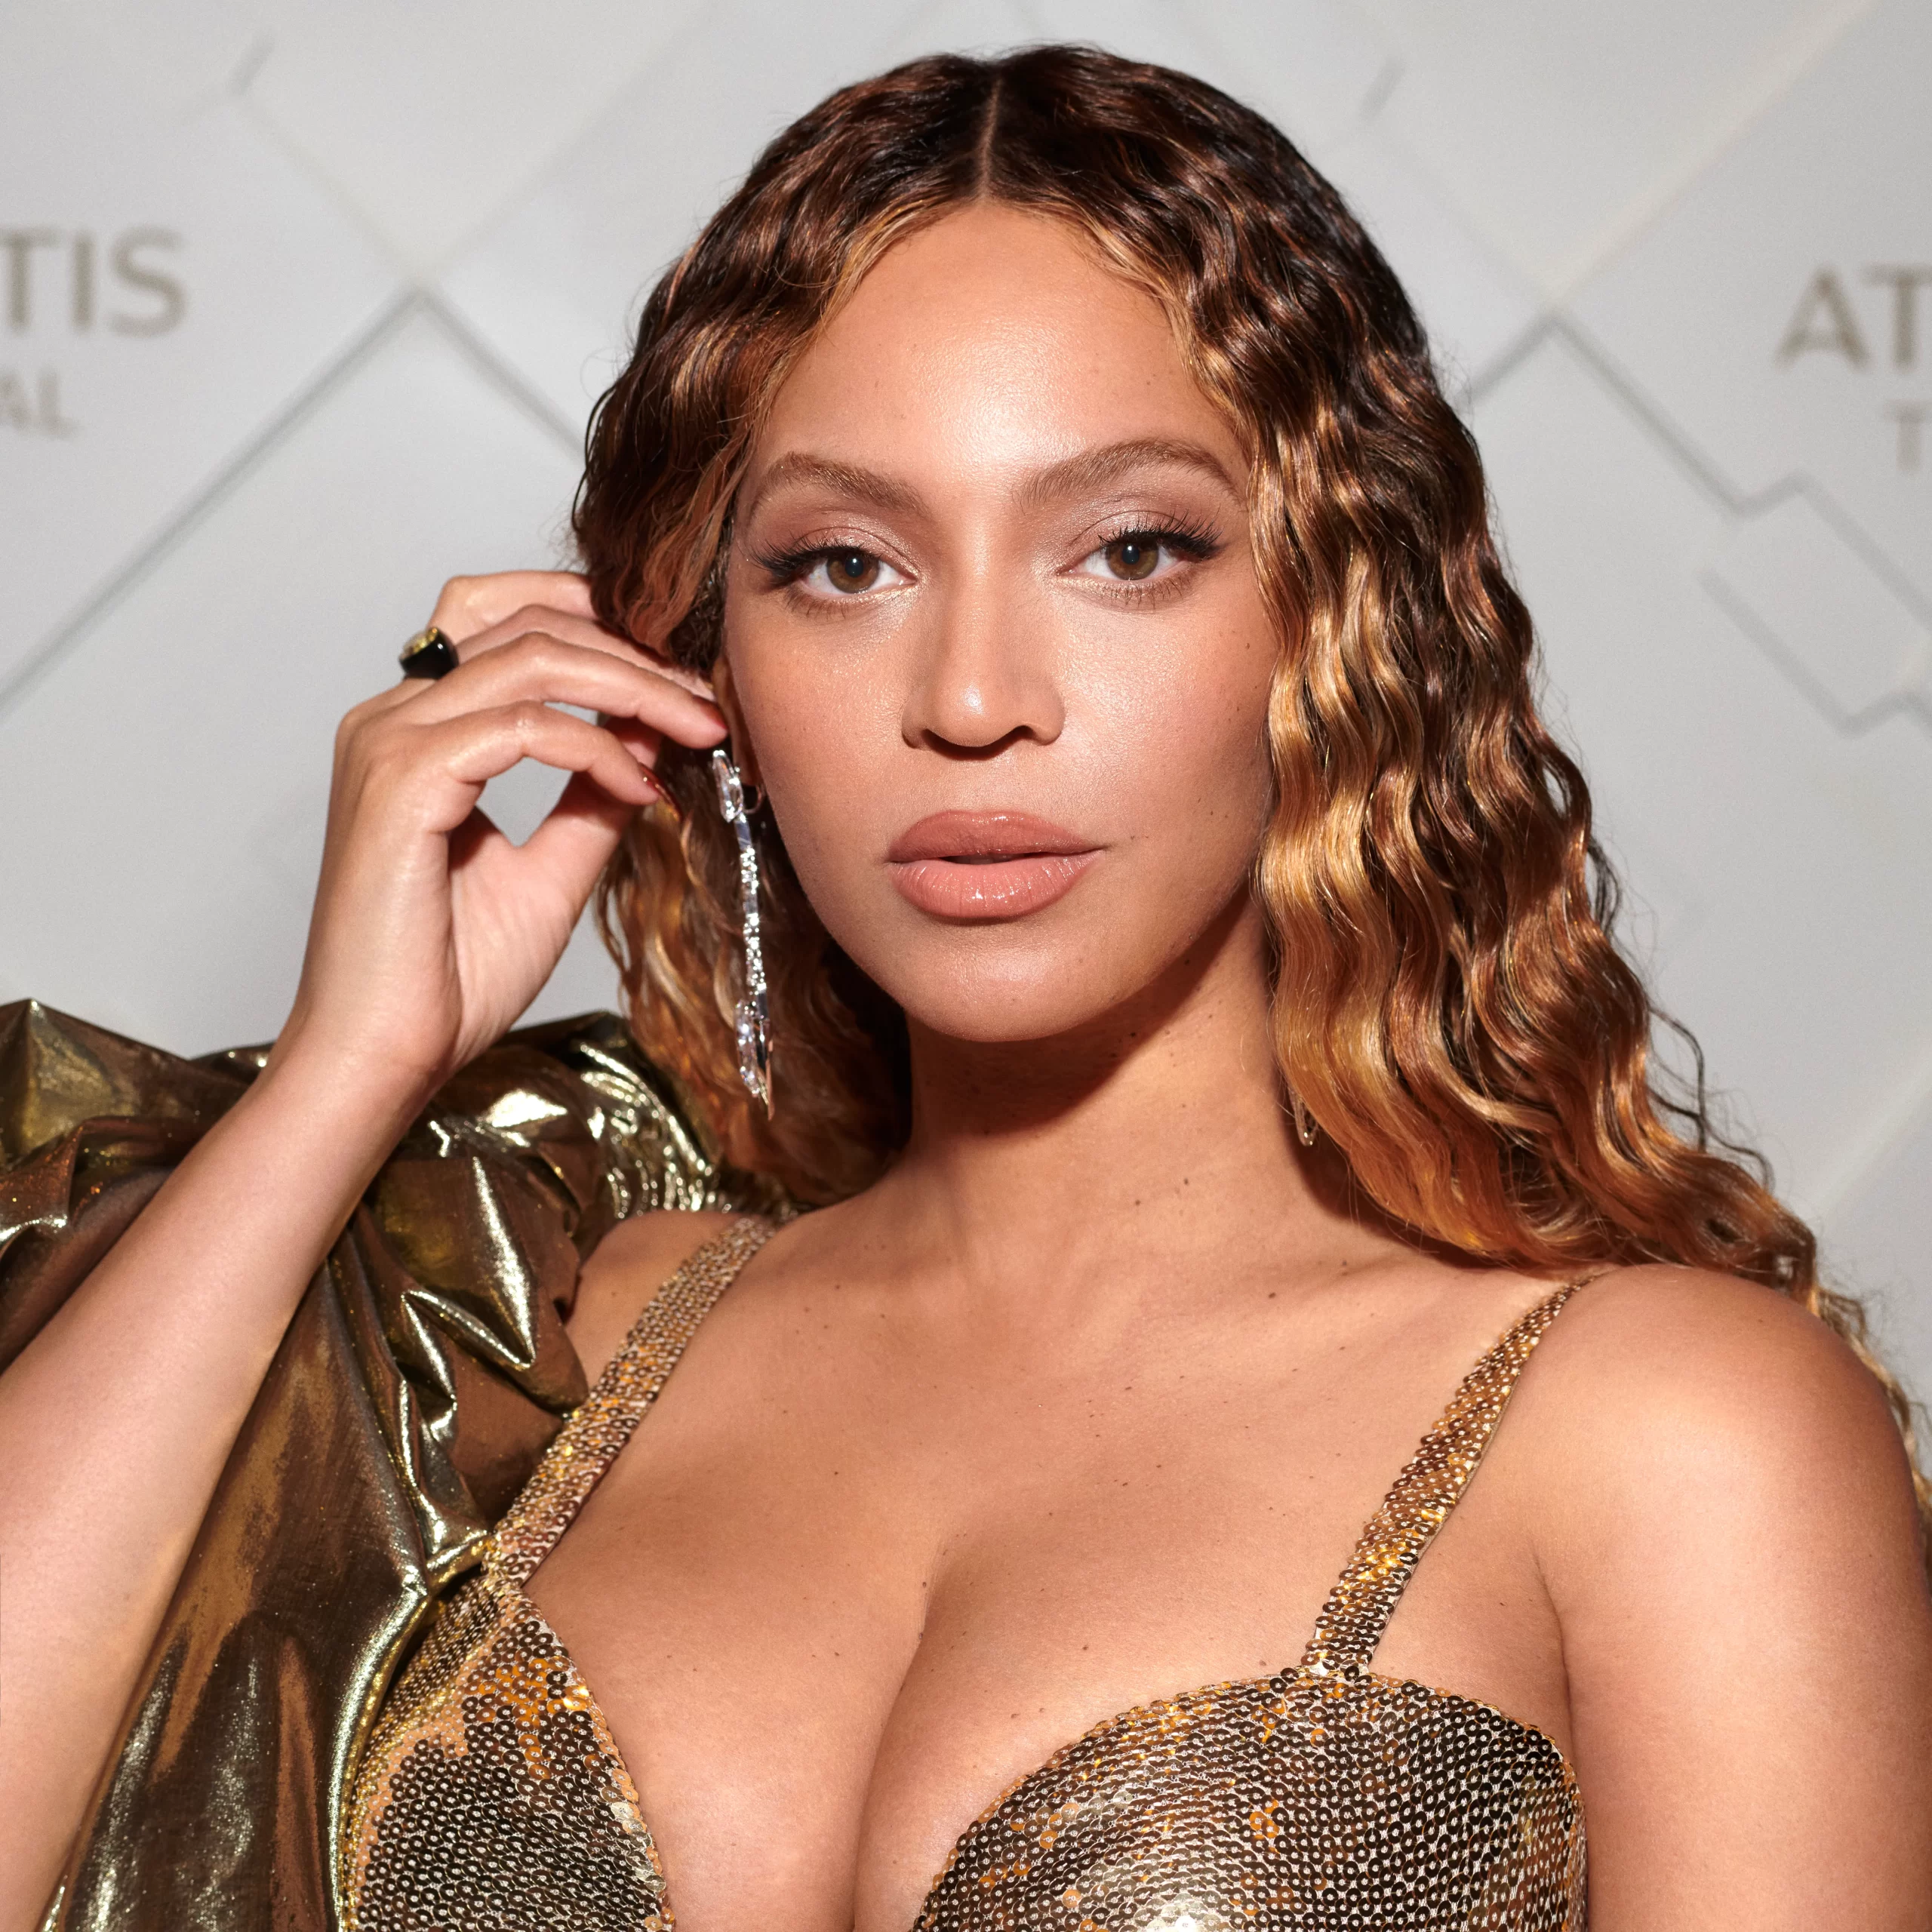 Beyonce Bares alt i fantastisk nyt albumkunstværk